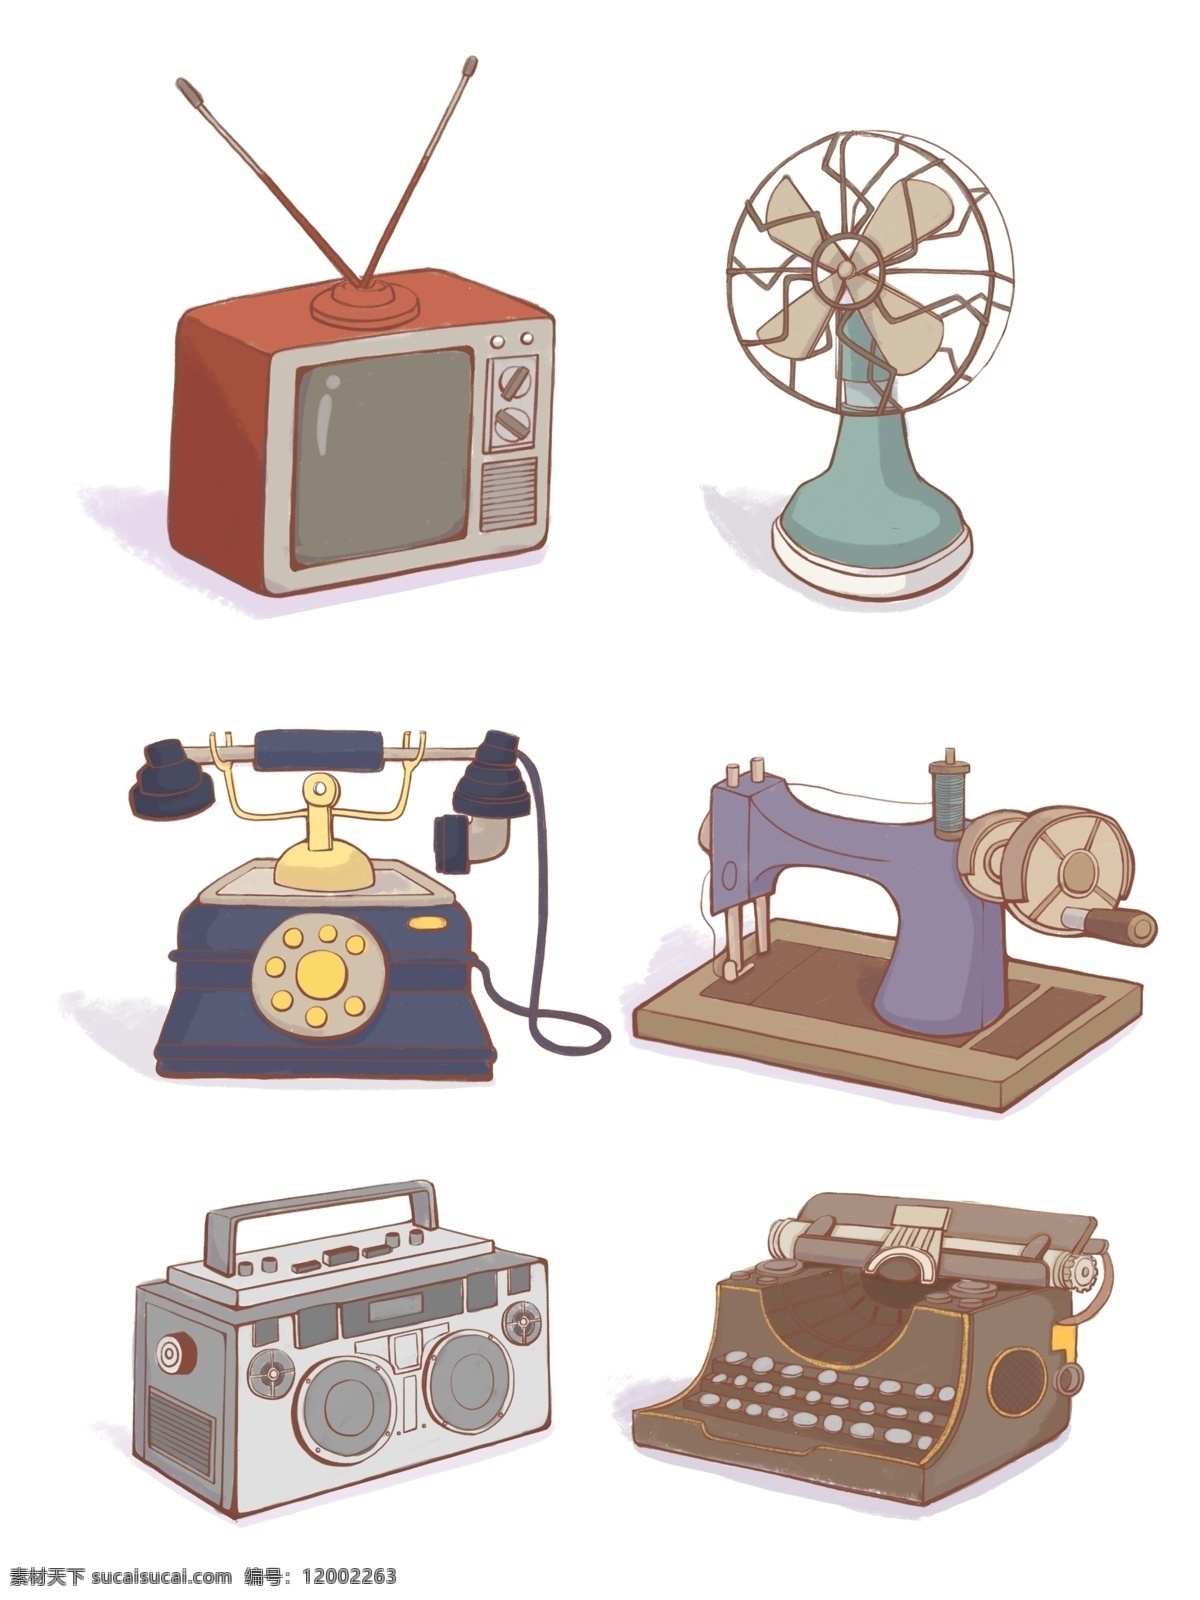 手绘 卡通 旧 时代 生活用品 旧家电 电器 家具